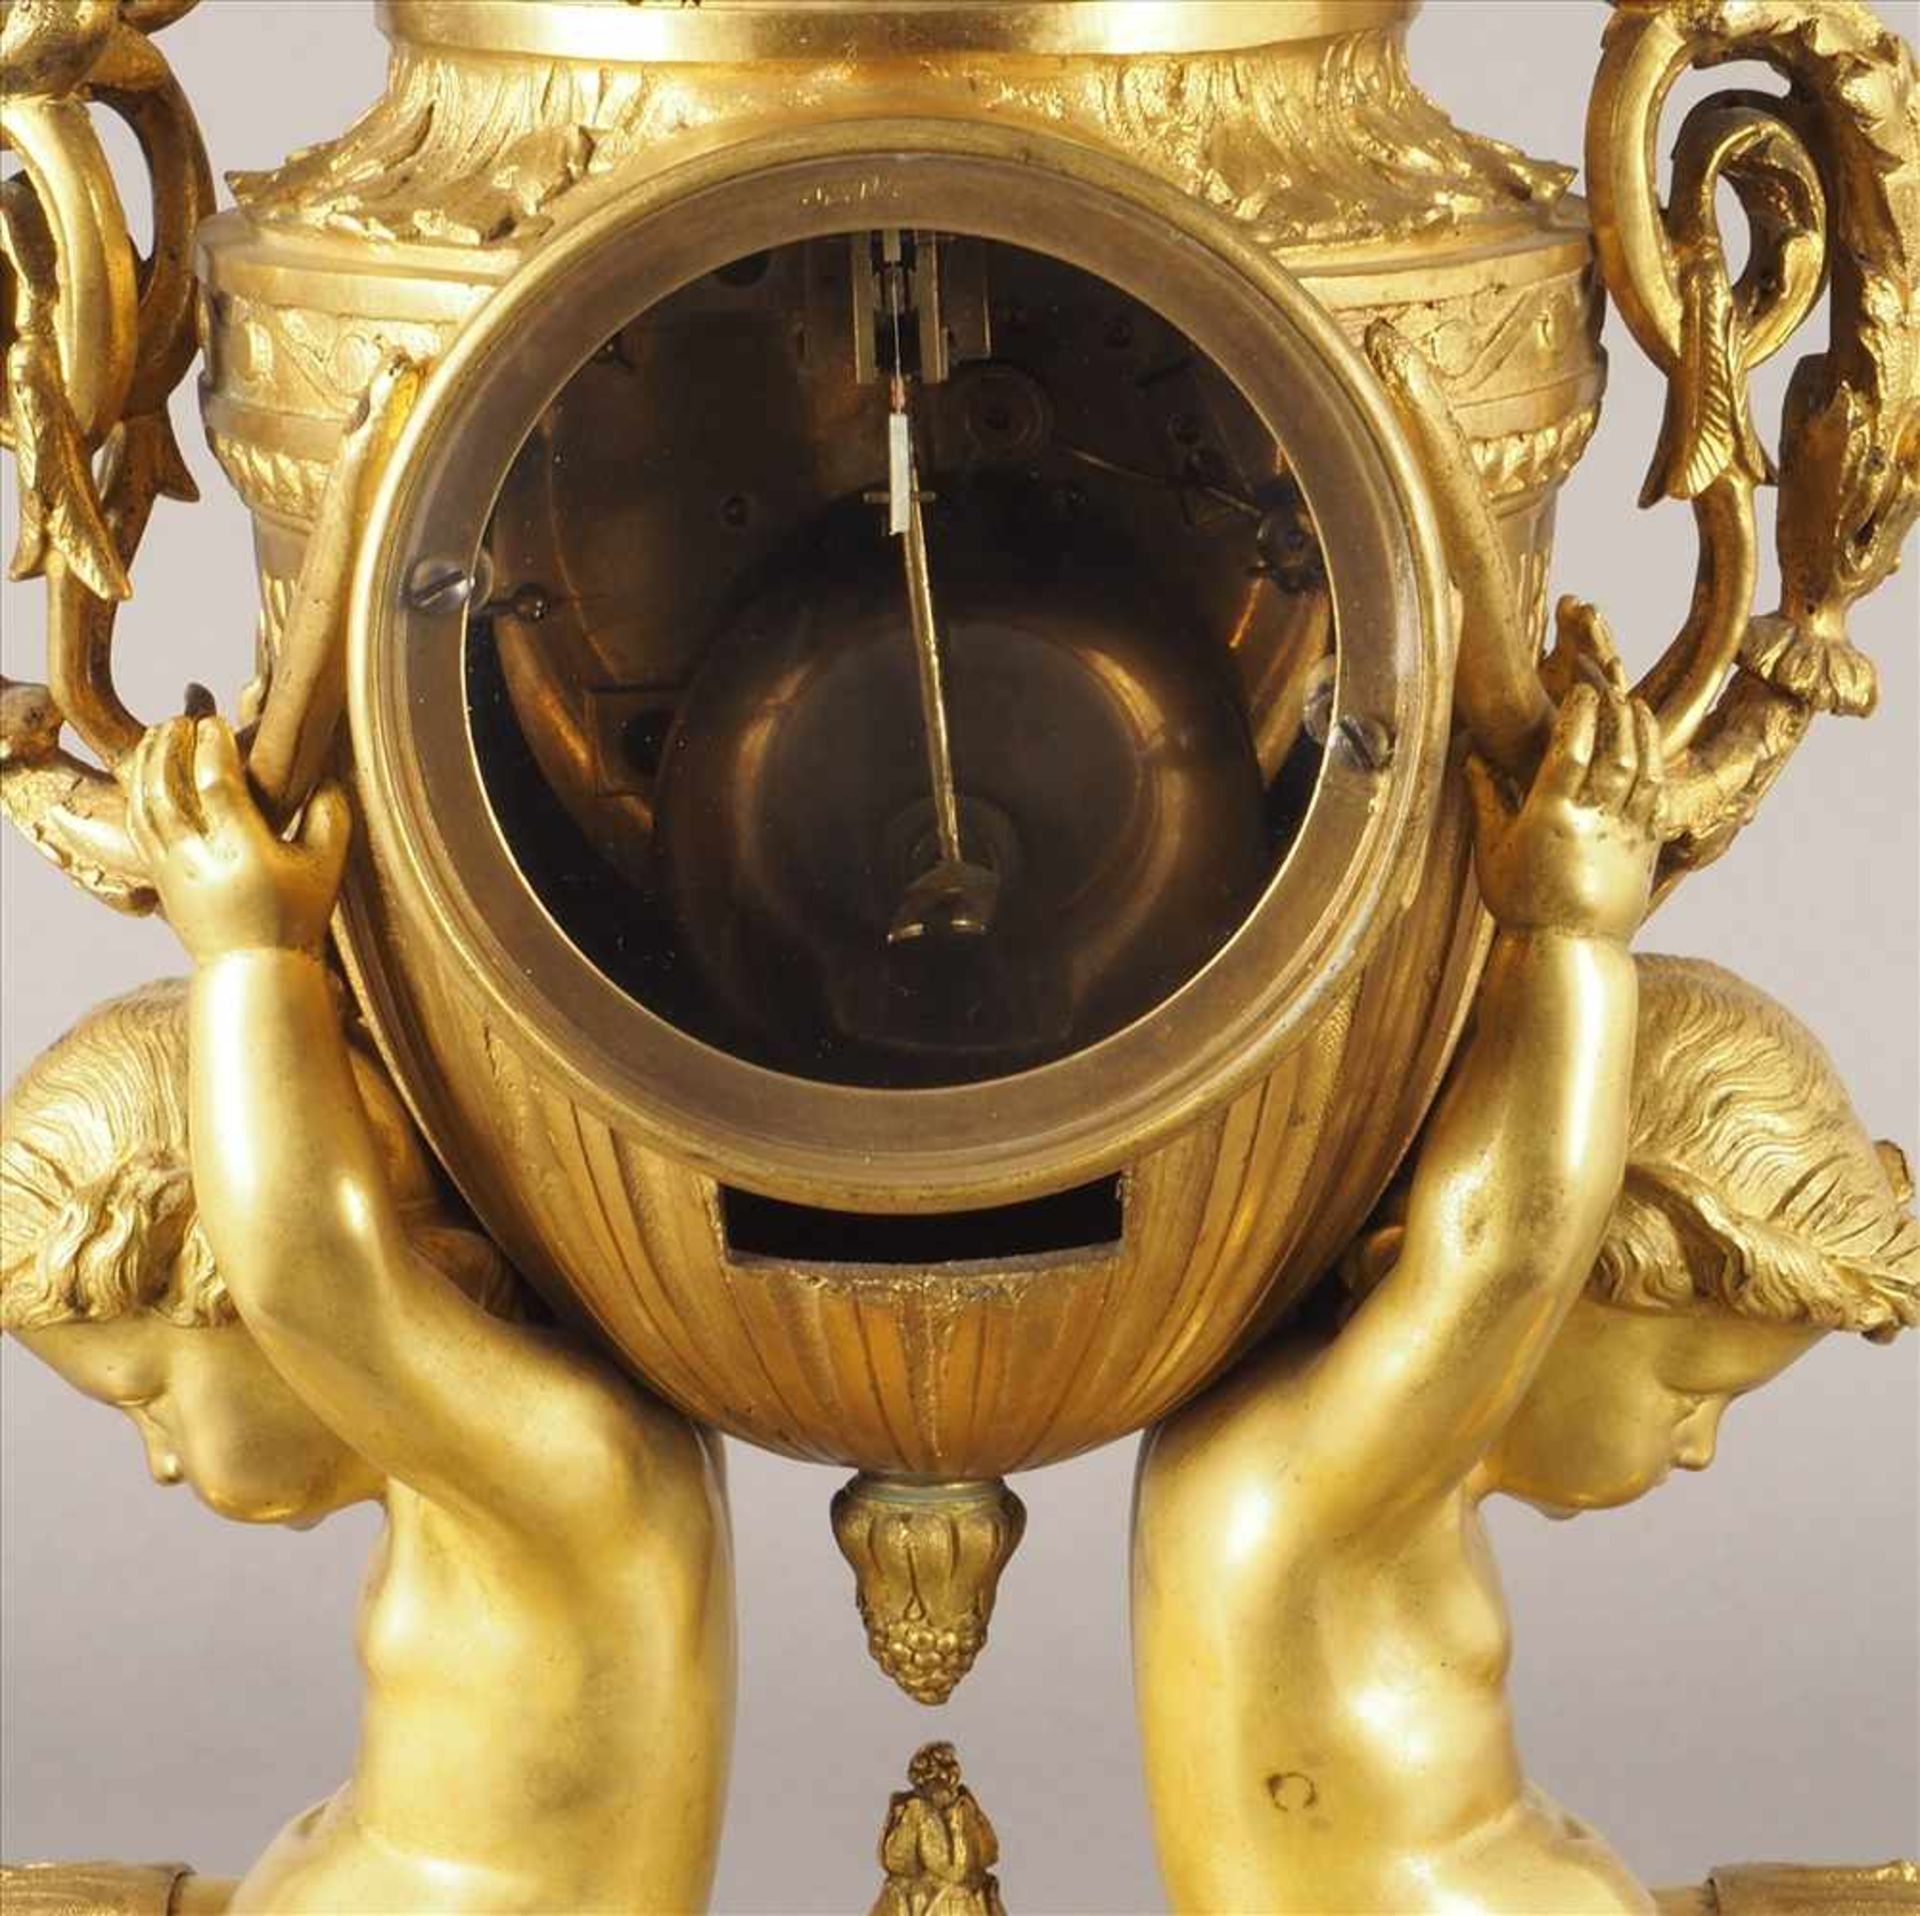 Feuervergoldete PrunkuhrVon Putten getragen, Bronze, feuervergoldet, 19.Jh., Pendel fehlt, Uhrwerk - Bild 5 aus 5